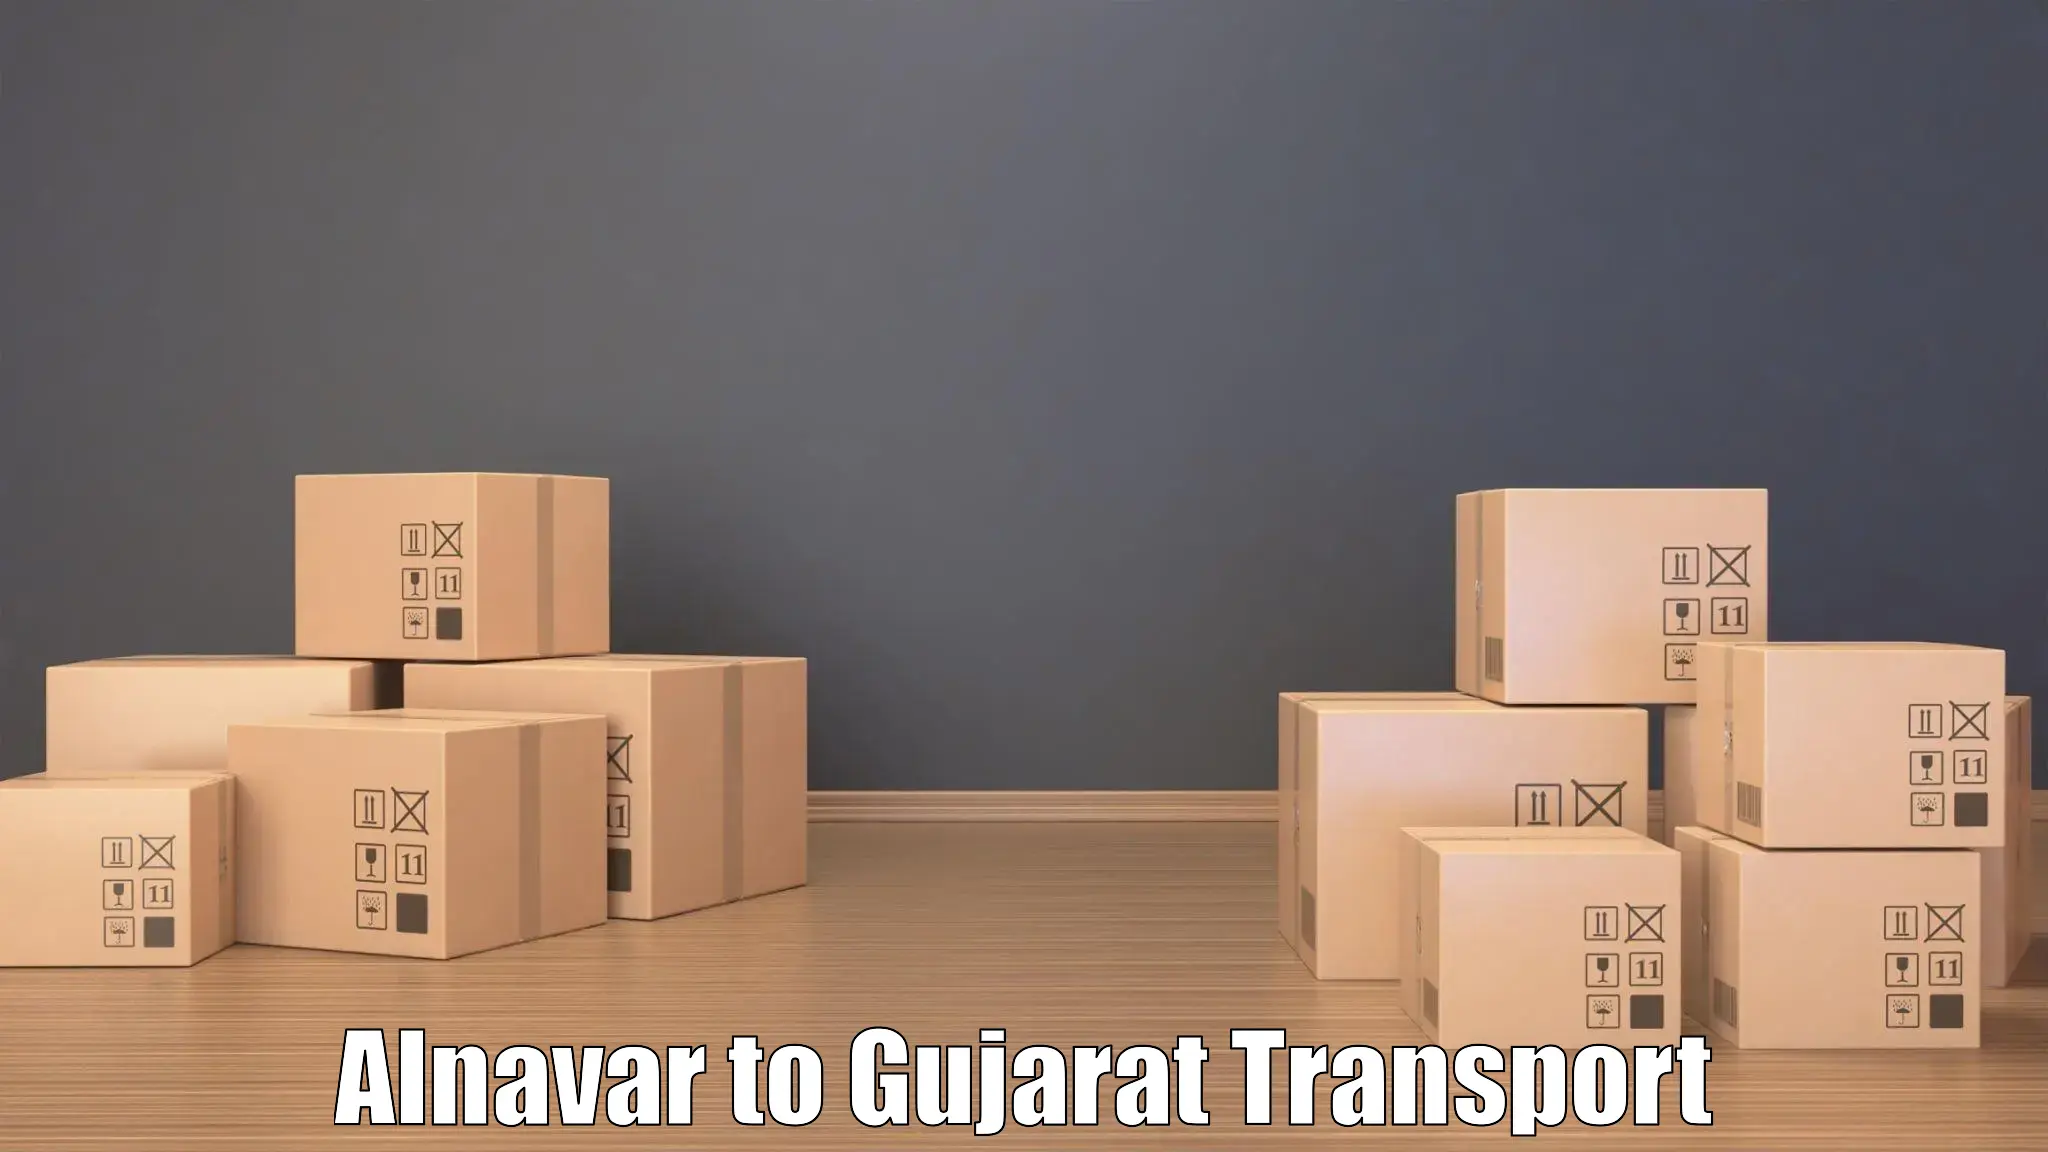 Cargo transport services Alnavar to Kadana